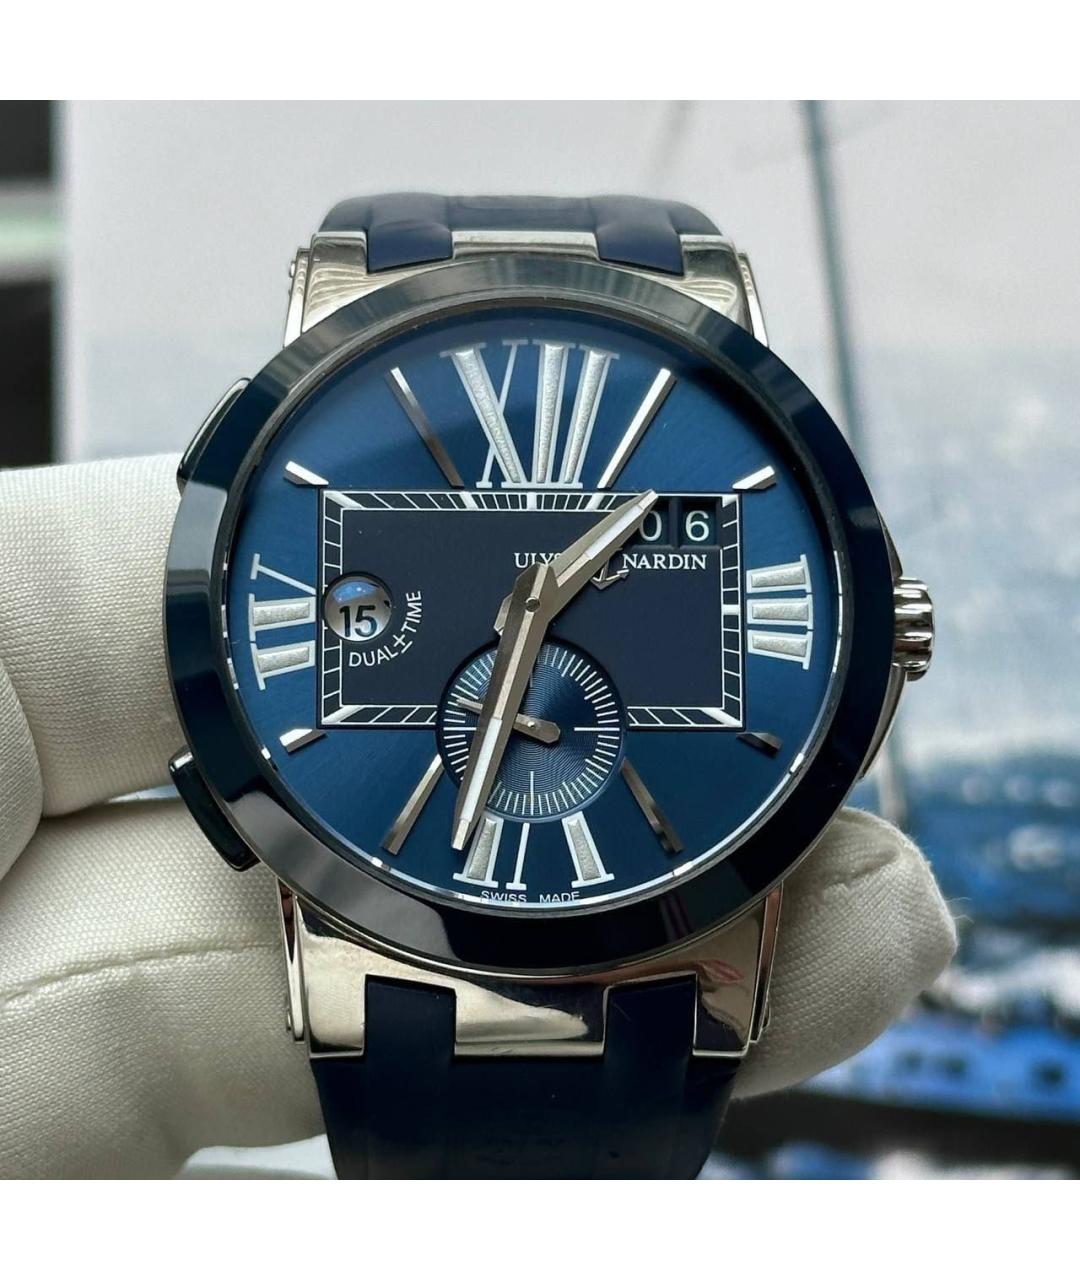 Ulysse Nardin Синие стальные часы, фото 2